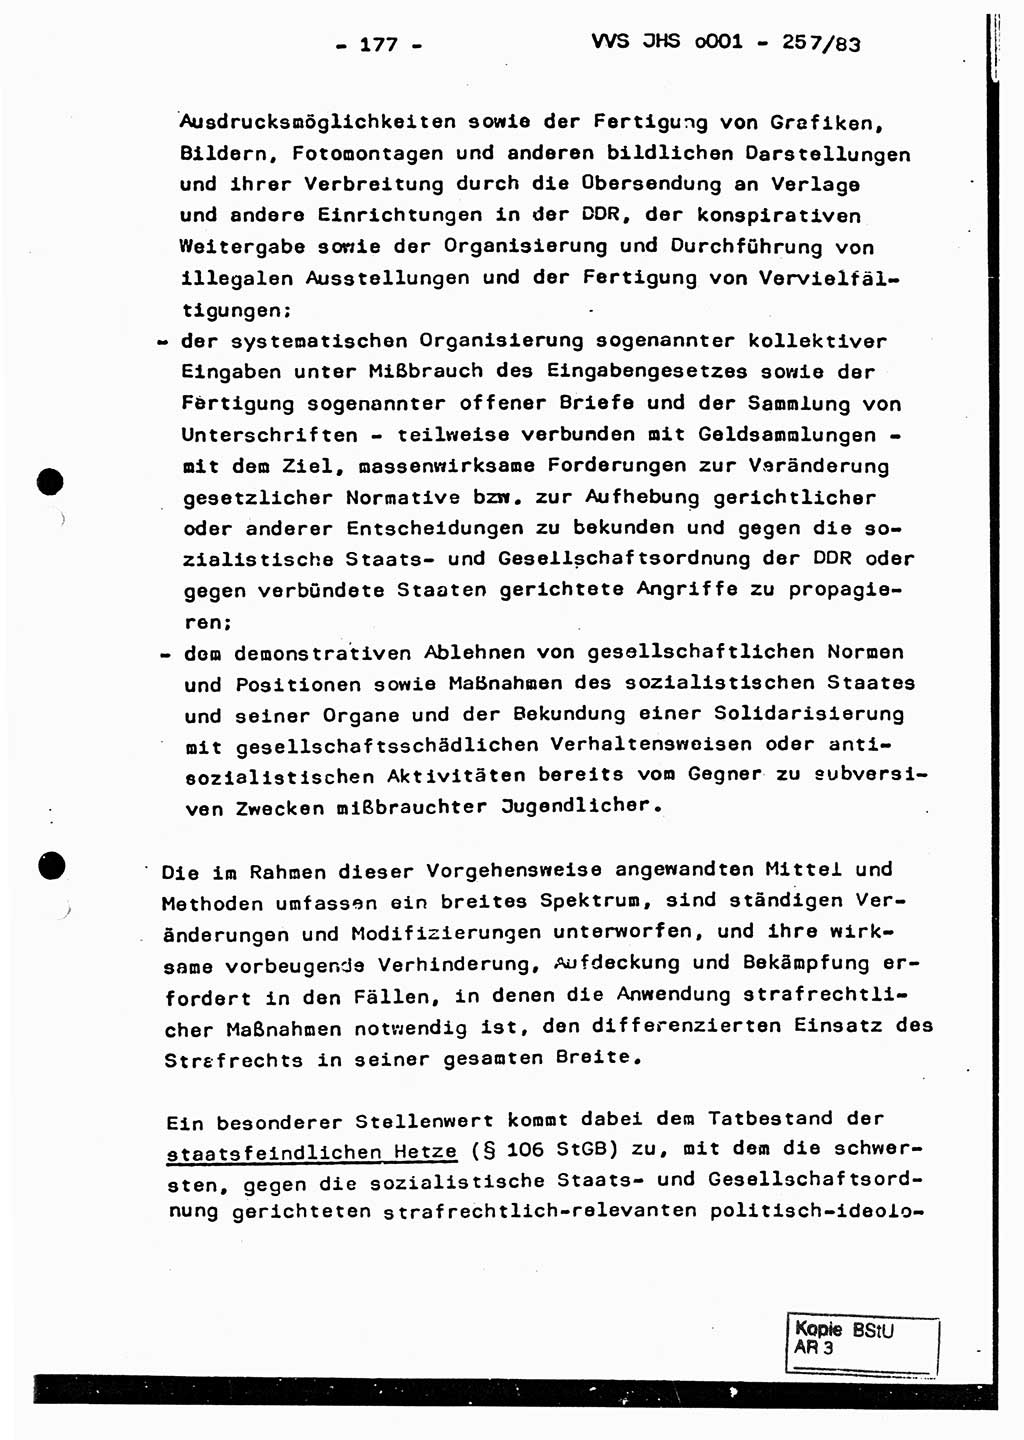 Dissertation, Oberst Helmut Lubas (BV Mdg.), Oberstleutnant Manfred Eschberger (HA IX), Oberleutnant Hans-Jürgen Ludwig (JHS), Ministerium für Staatssicherheit (MfS) [Deutsche Demokratische Republik (DDR)], Juristische Hochschule (JHS), Vertrauliche Verschlußsache (VVS) o001-257/83, Potsdam 1983, Seite 177 (Diss. MfS DDR JHS VVS o001-257/83 1983, S. 177)